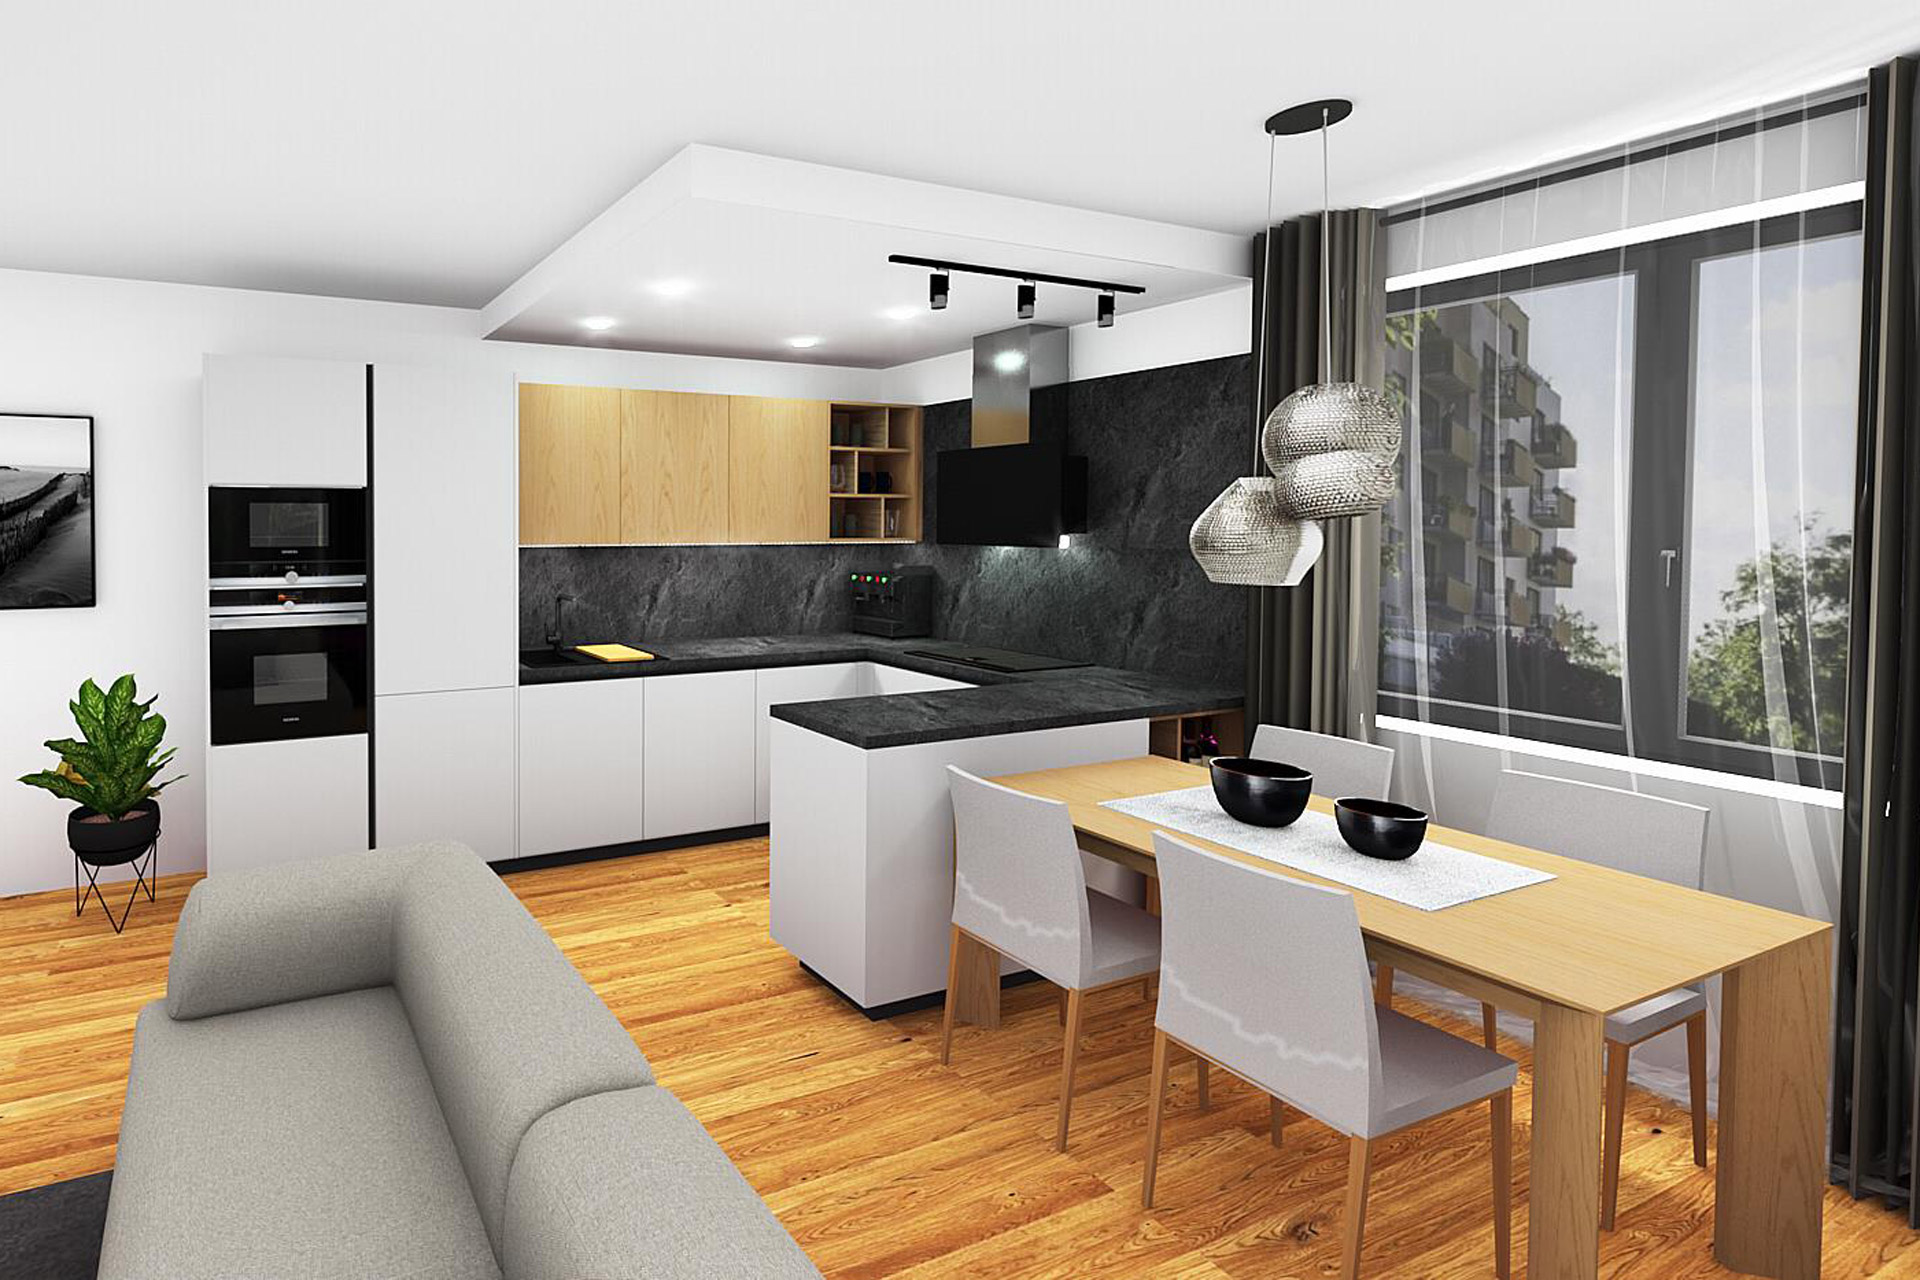 Hanák Interior design Kitchen with living room